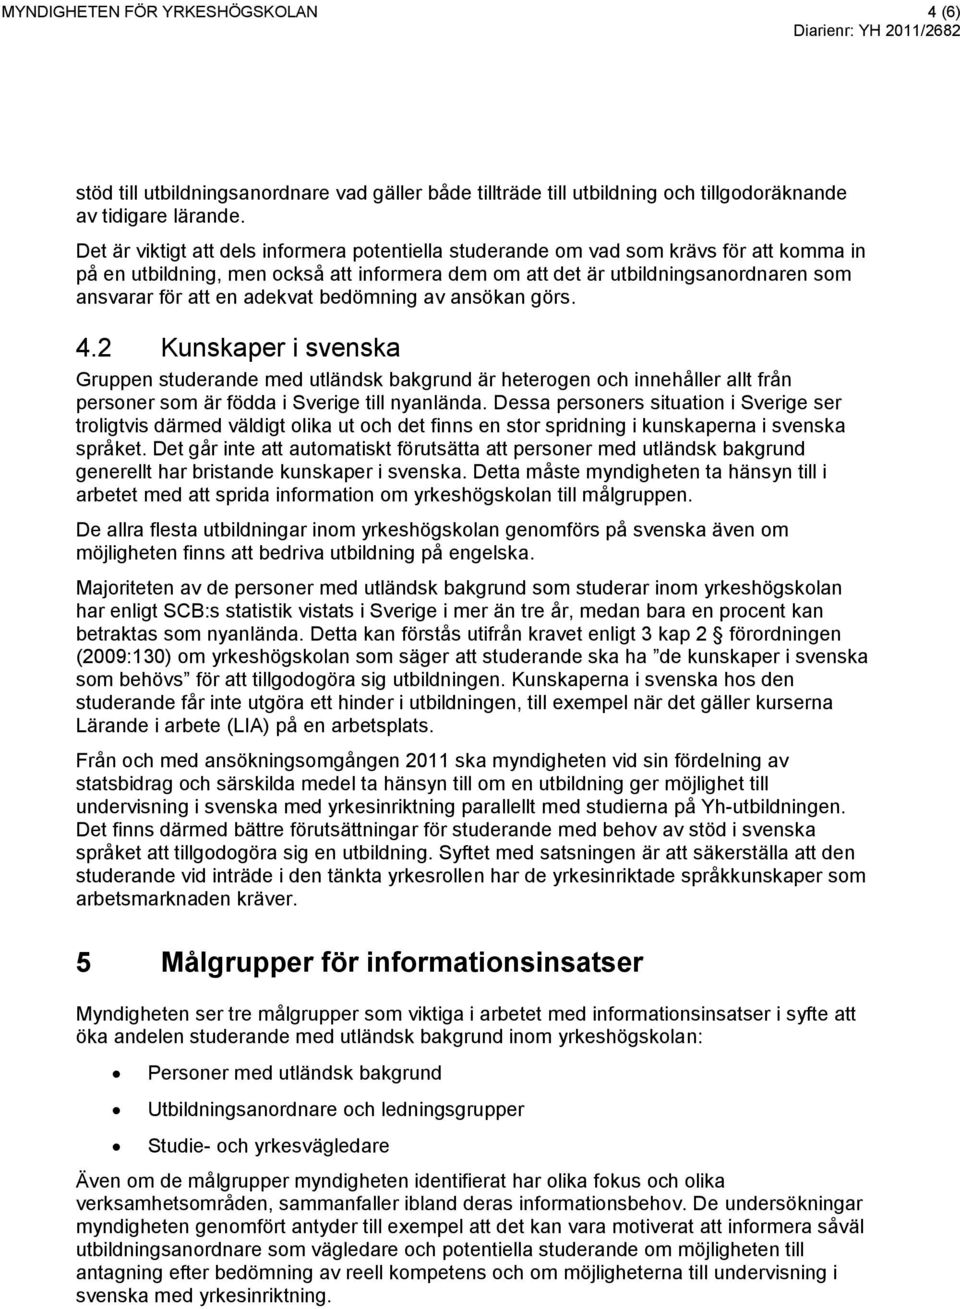 adekvat bedömning av ansökan görs. 4.2 Kunskaper i svenska Gruppen studerande med utländsk bakgrund är heterogen och innehåller allt från personer som är födda i Sverige till nyanlända.